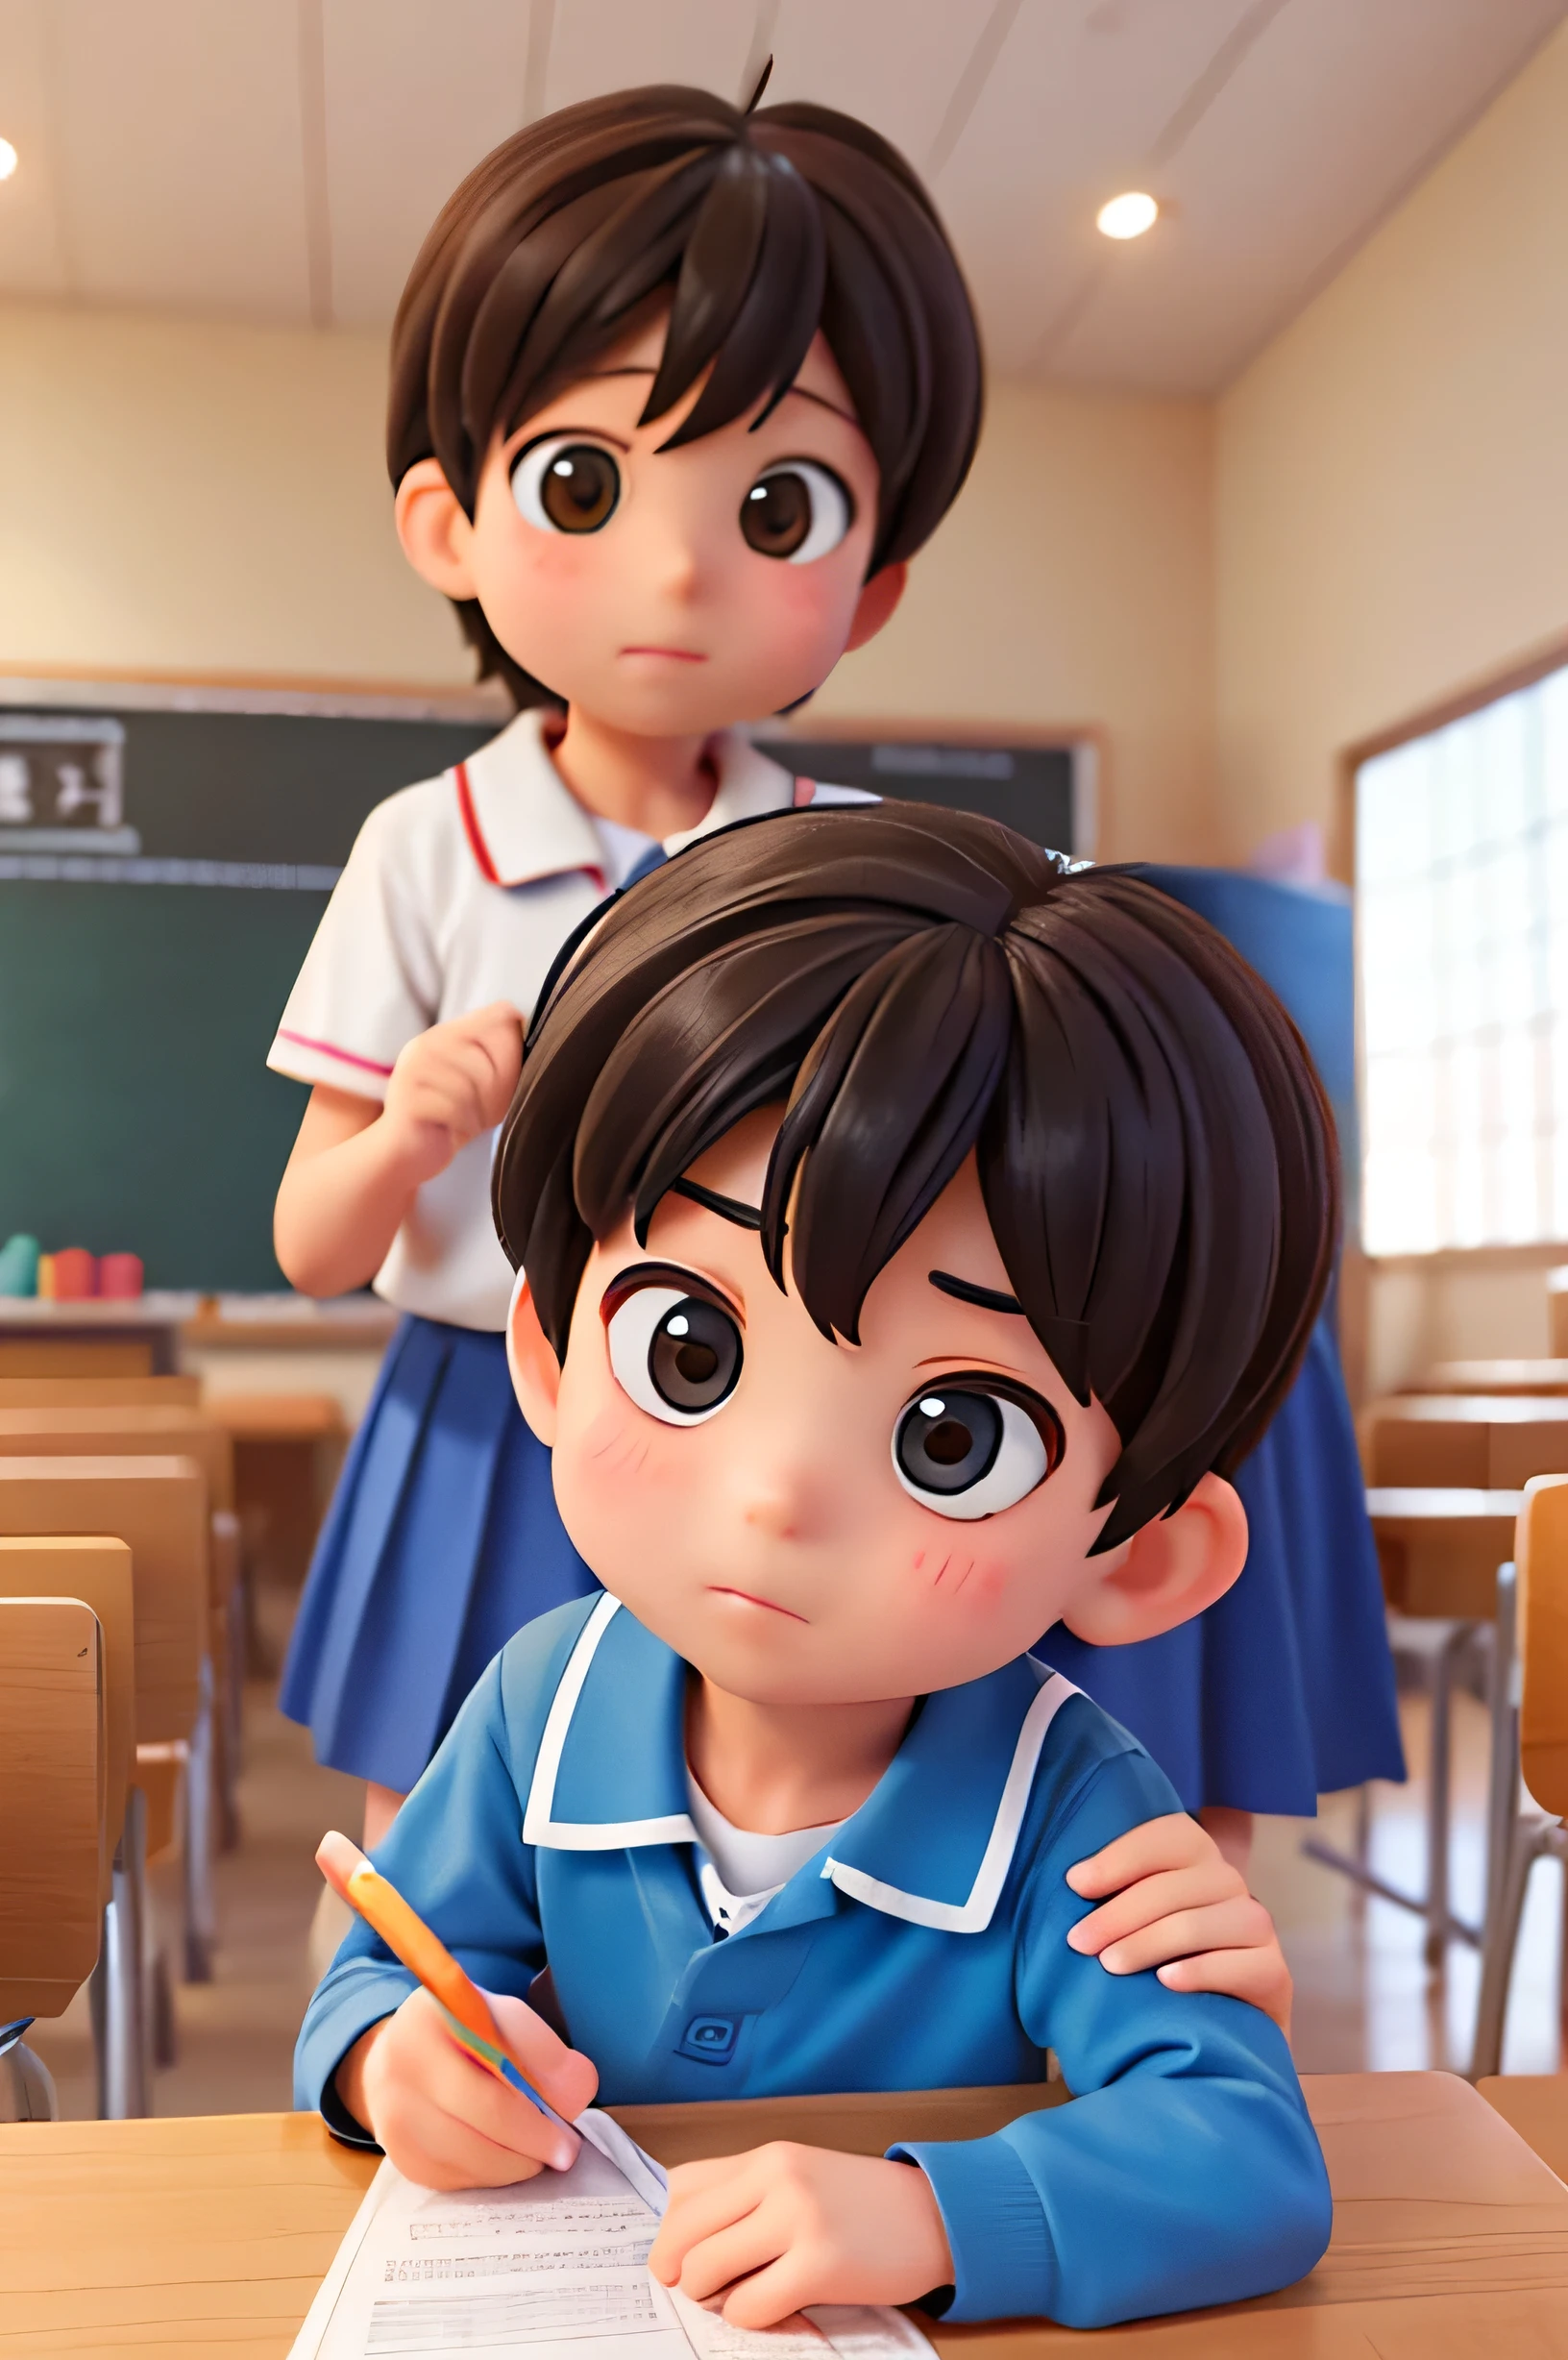 chico　3 personas　rostro　lindo　estudiantes de escuela primaria　８edad　Focus on rostro